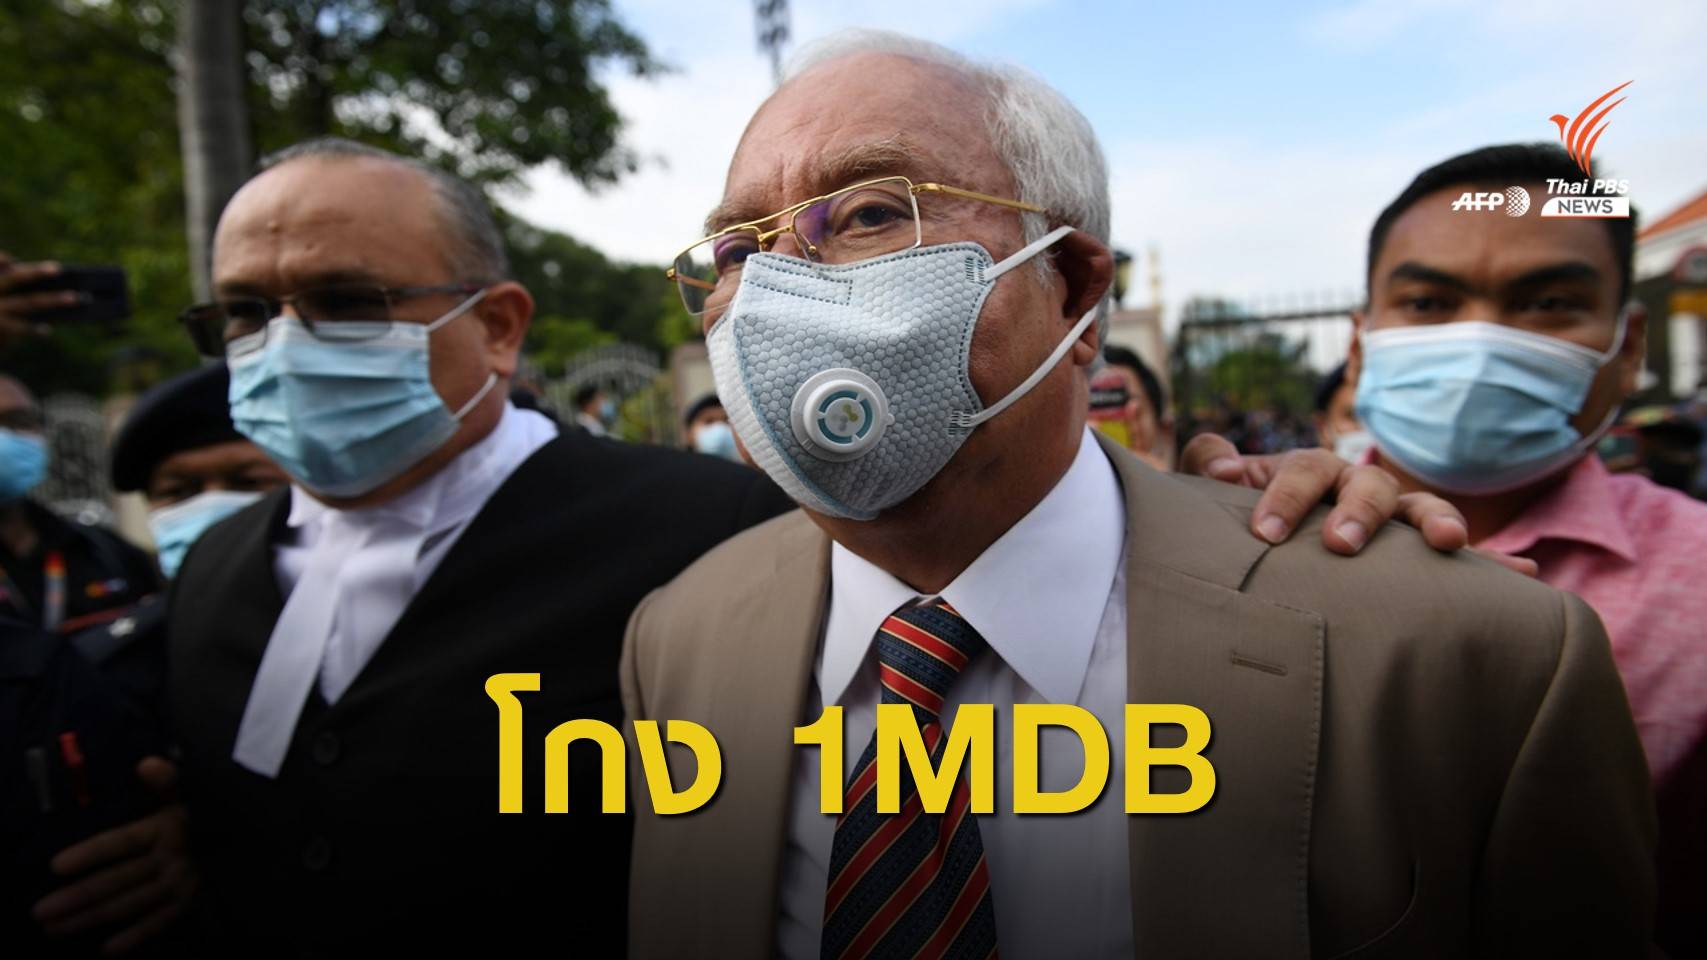 ศาลมาเลเซียตัดสิน "นาจิบ ราซัค" ใช้อำนาจมิชอบโกงเงิน 1MDB